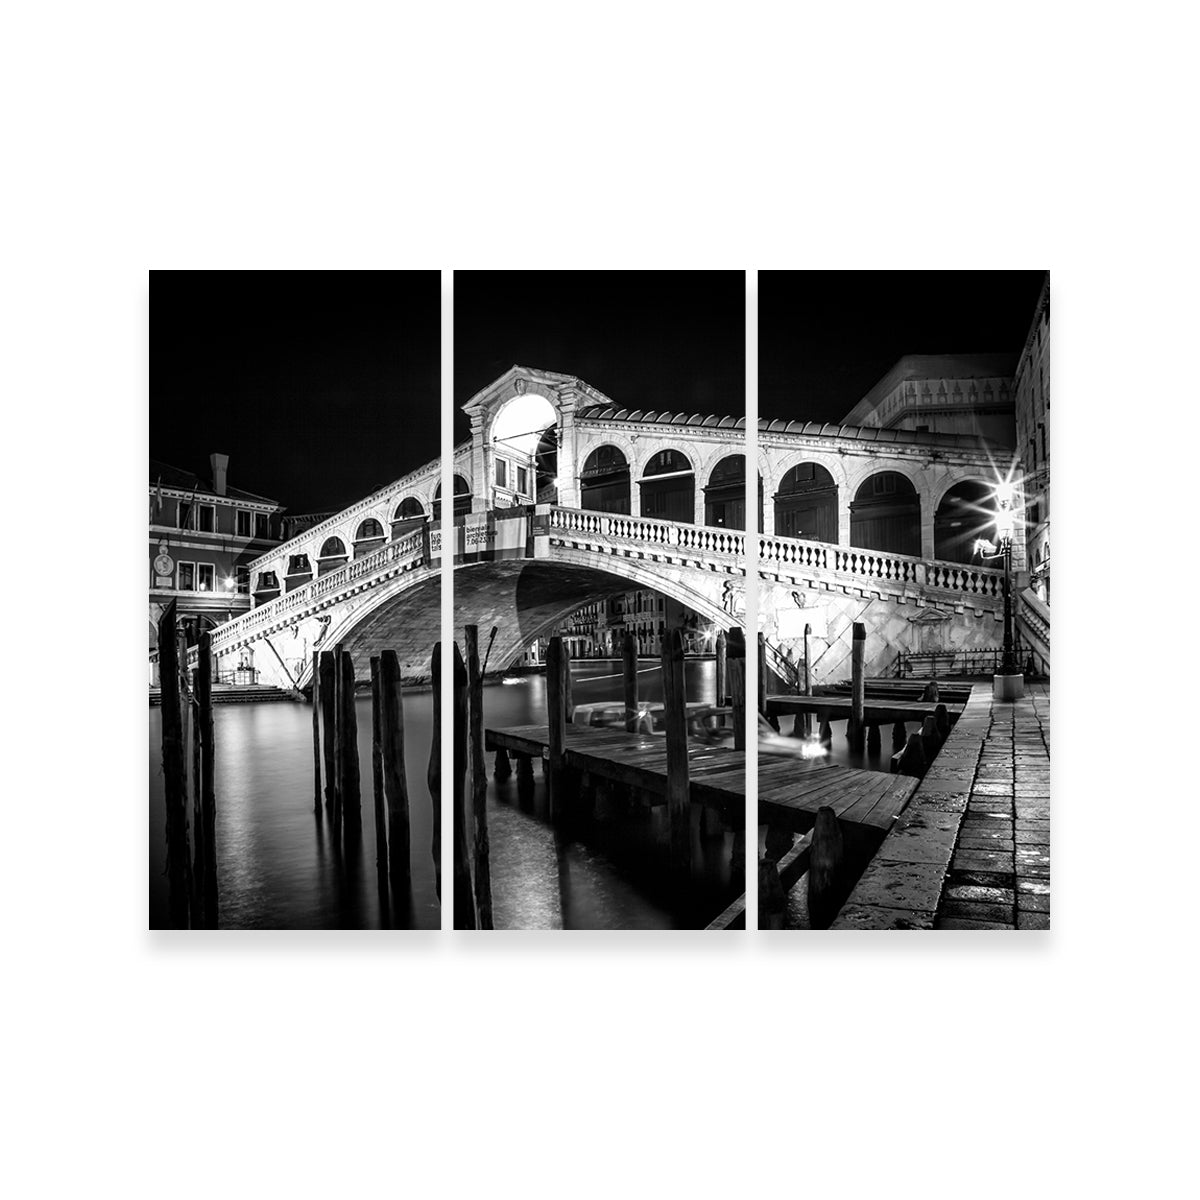 Venice Rialto Bridge at Night